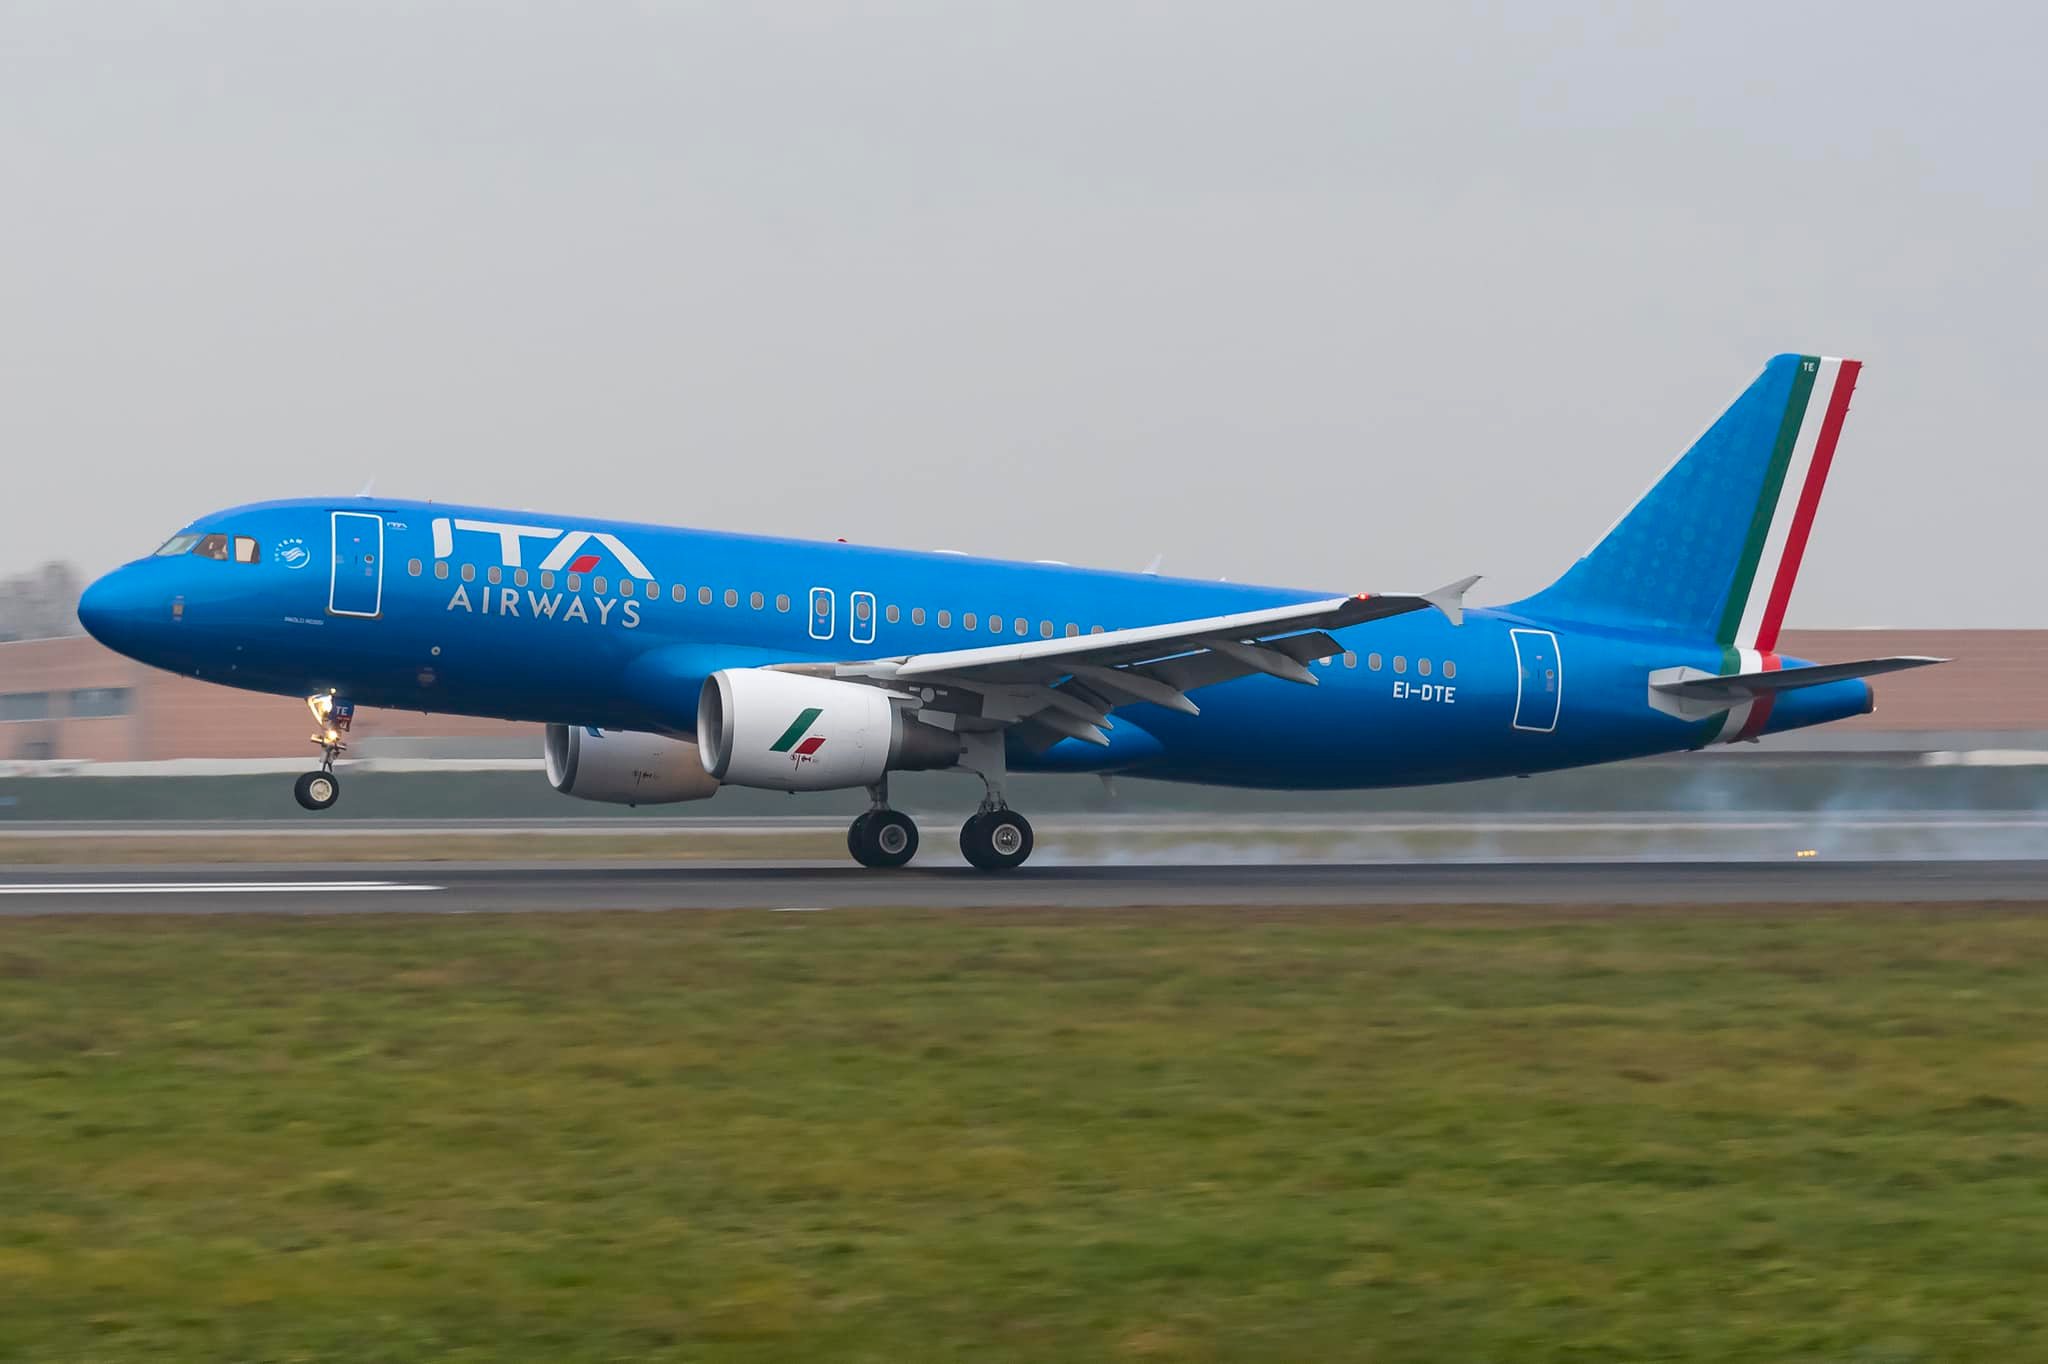 Da Pescara e Perugia al resto del mondo con il biglietto unico ITA Airways-Itabus